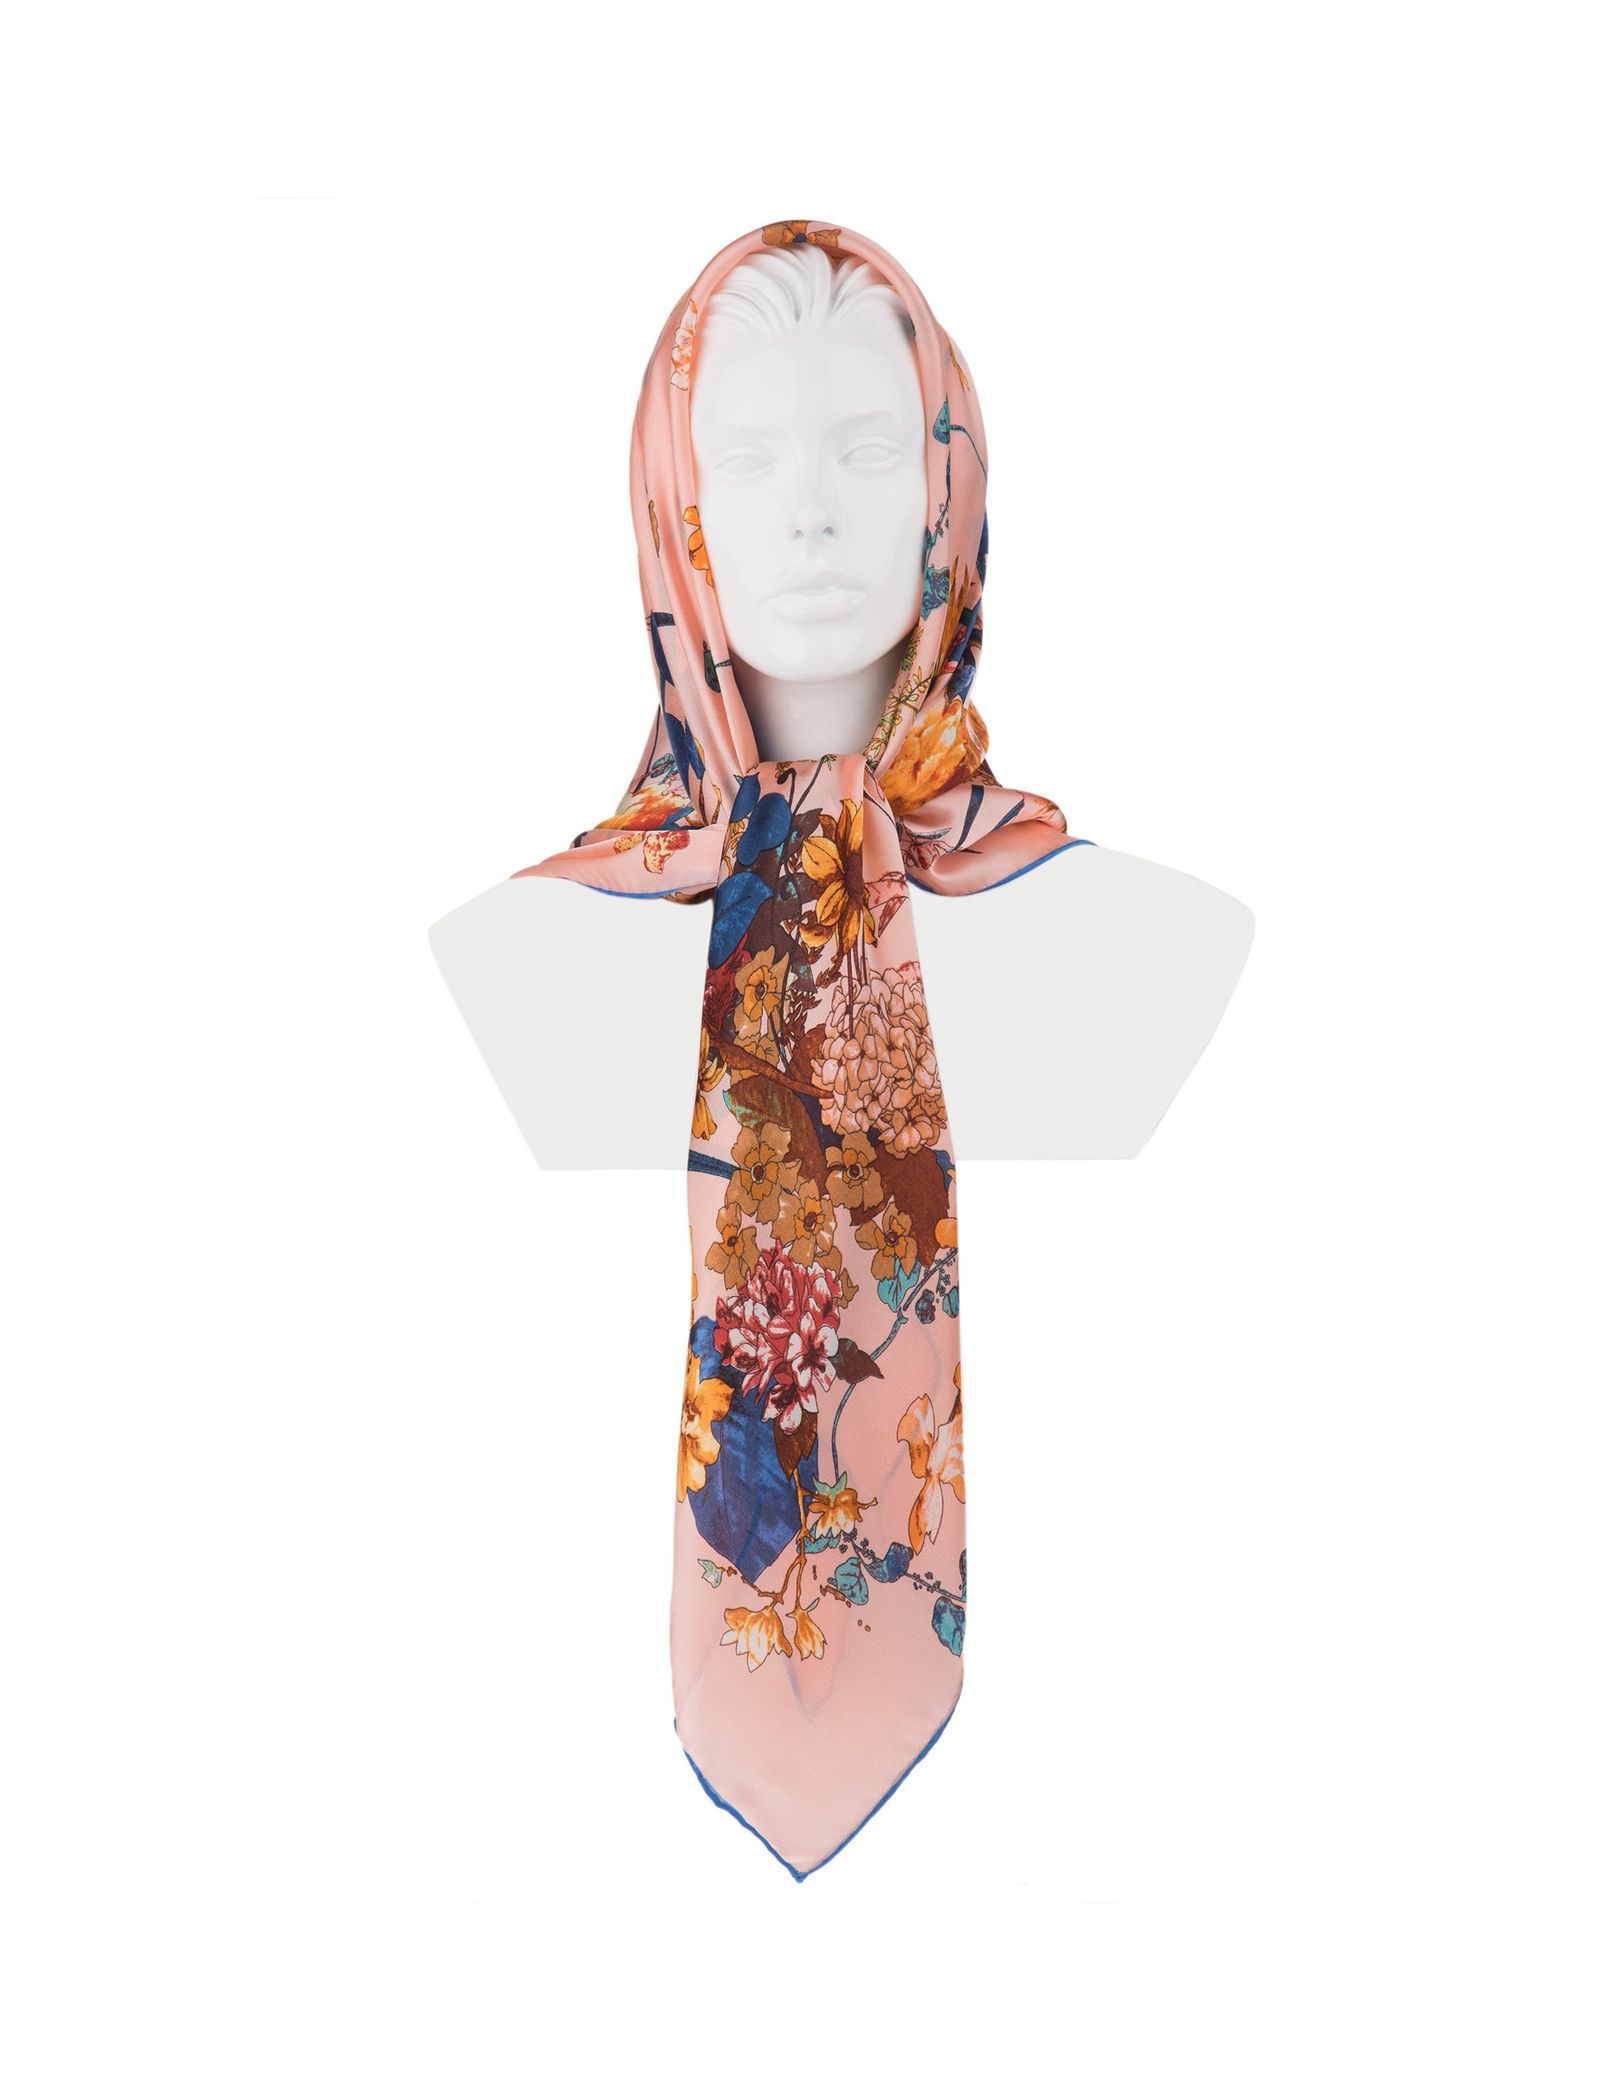 روسری ابریشمی زنانه - رزتی - صورتي - 2